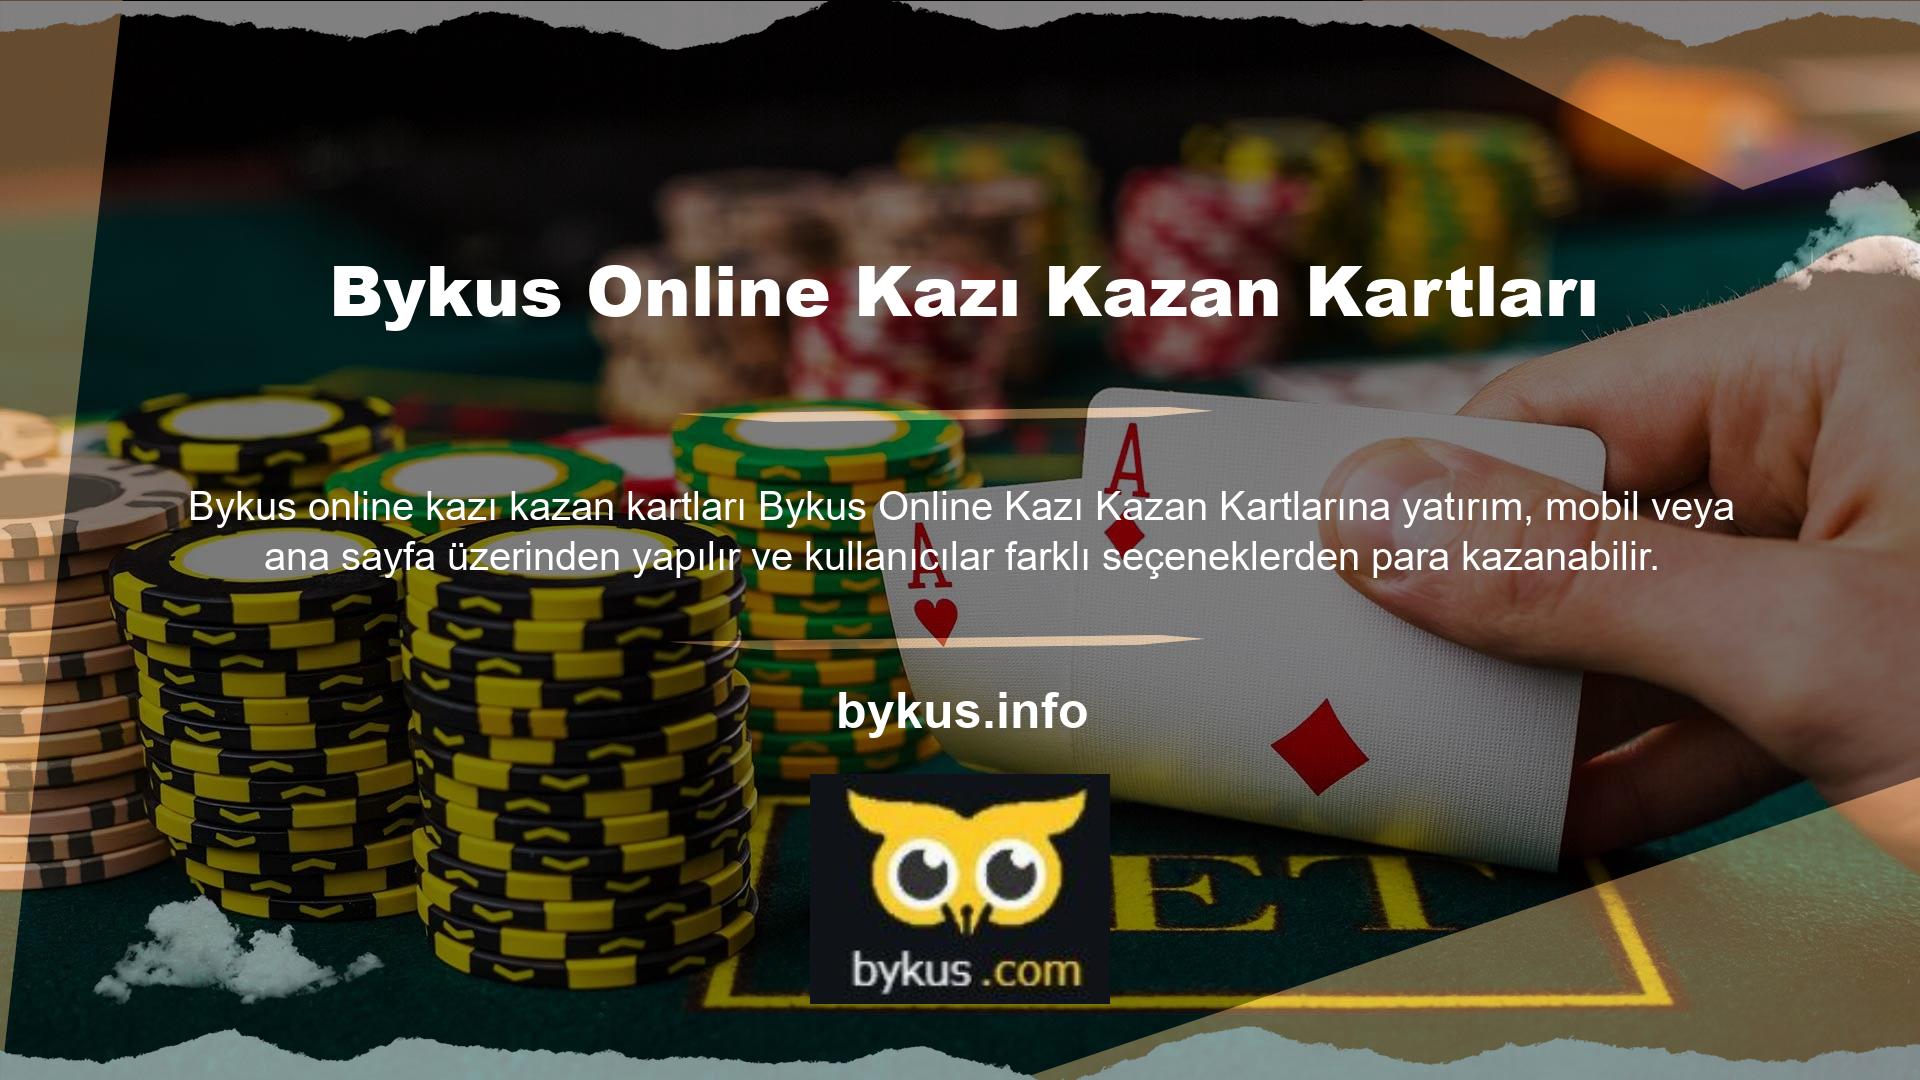 Bykus, kart değerini yüksek tutmak için renkli kartlar ve çoklu kart seçenekleri ile oyuncuların dikkatini çekiyor